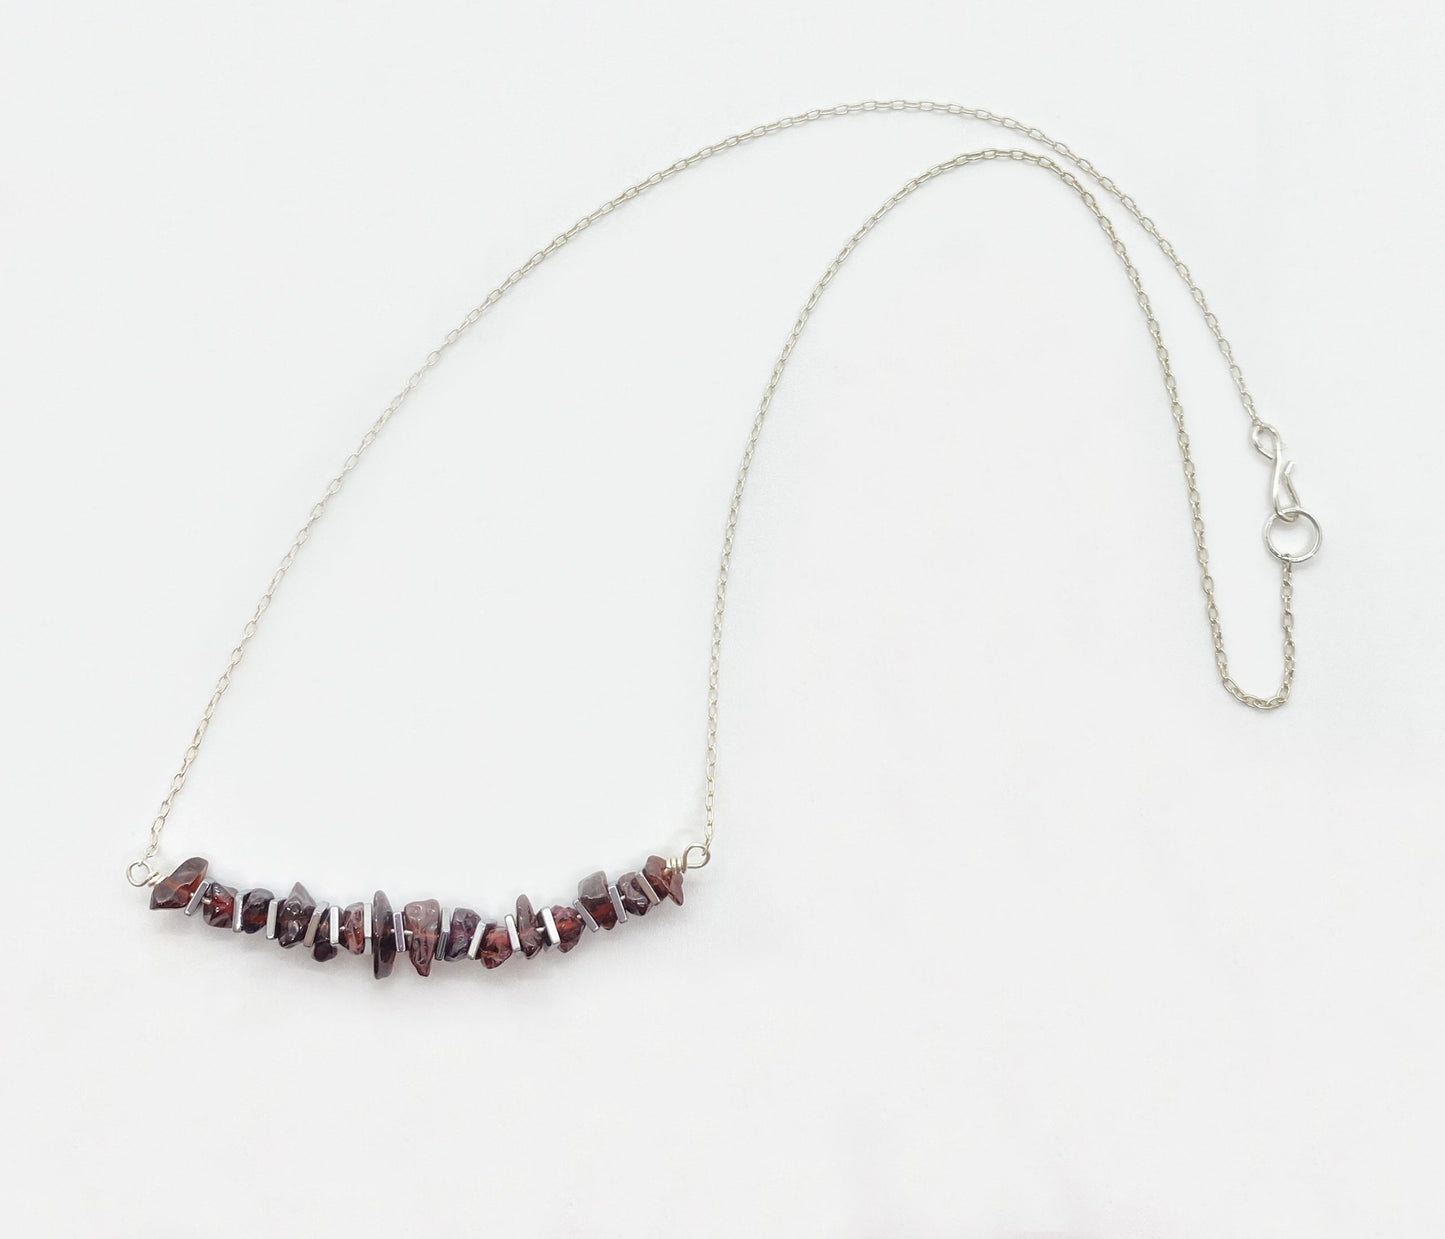 Garnet and Hematite Gemstone Necklace